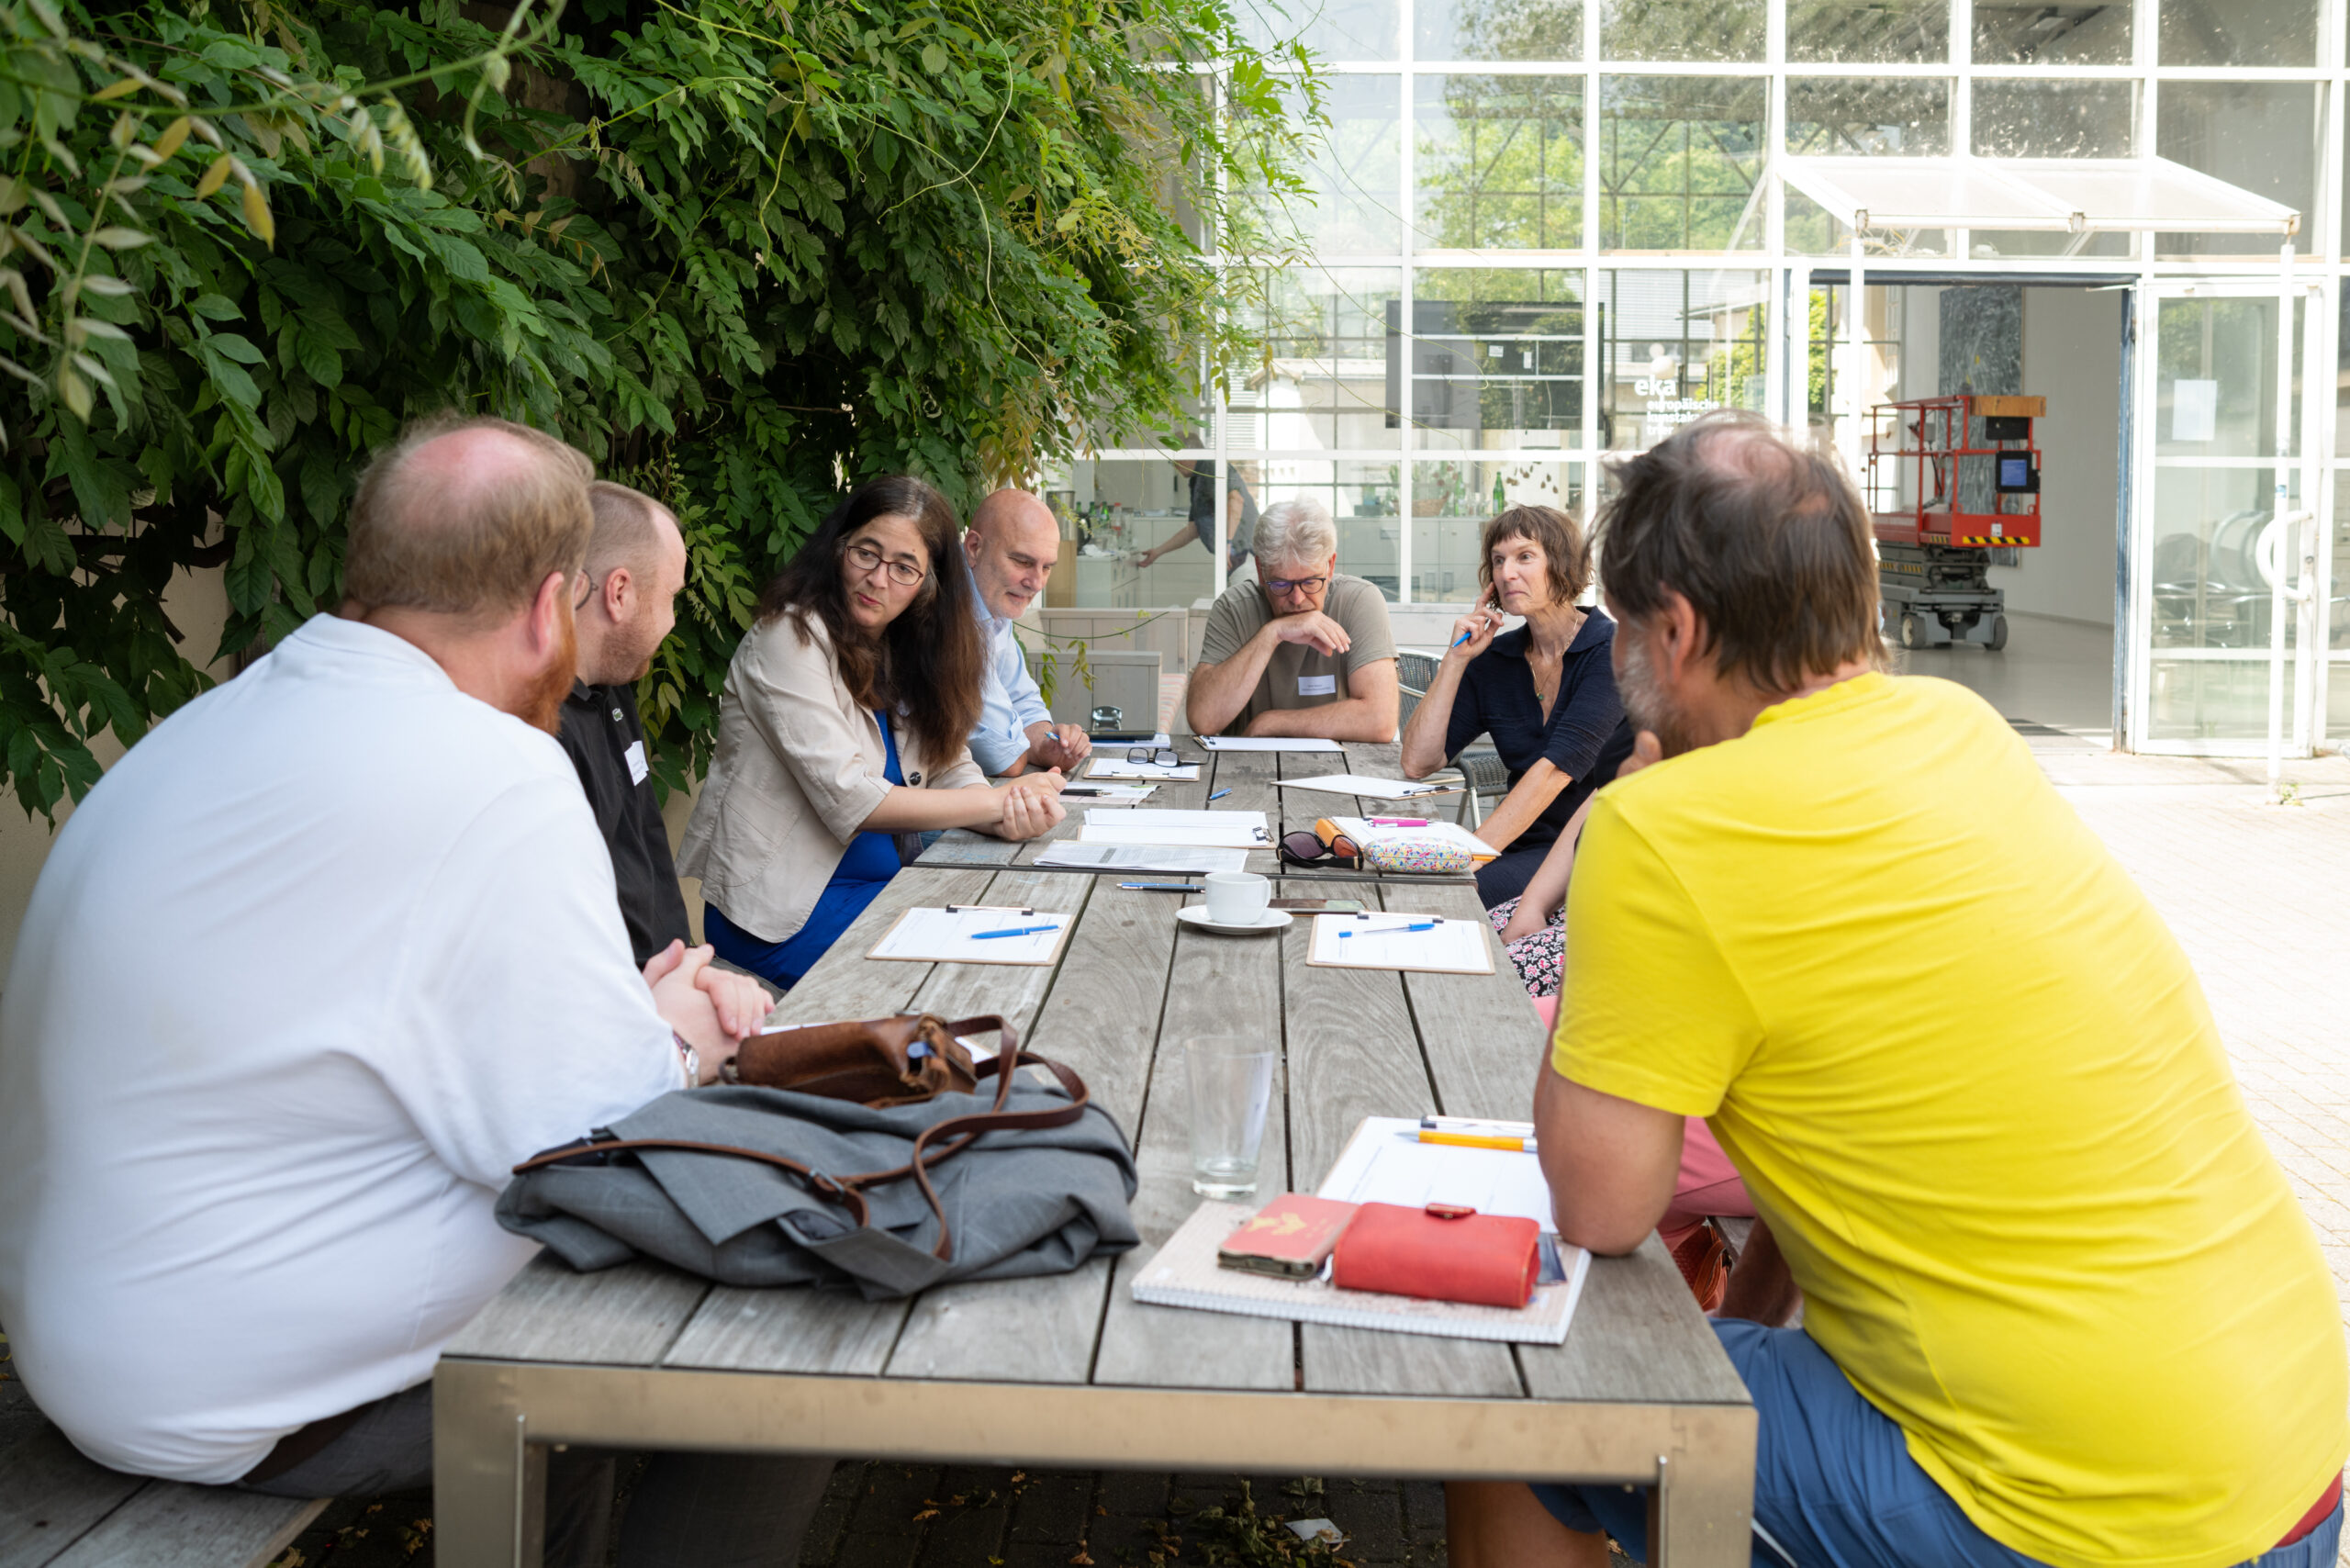 Diskussionsrunde im Freien an einem Holztisch vor grün bepflanzter Wand